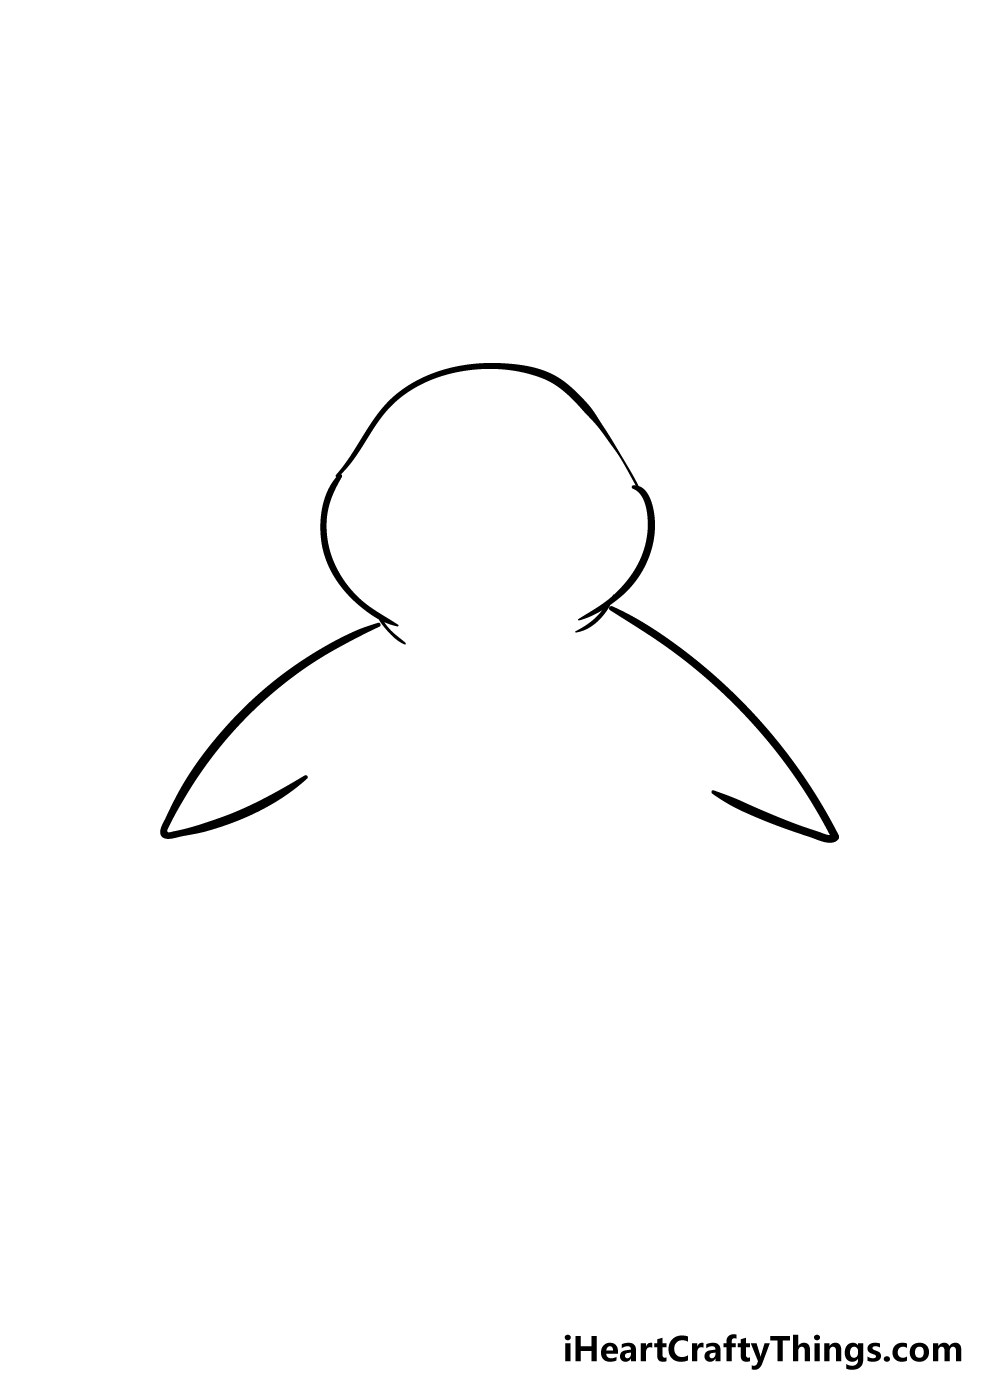 Penguin2 - Hướng dẫn cách vẽ chim cánh cụt đơn giản với 7 bước cơ bản